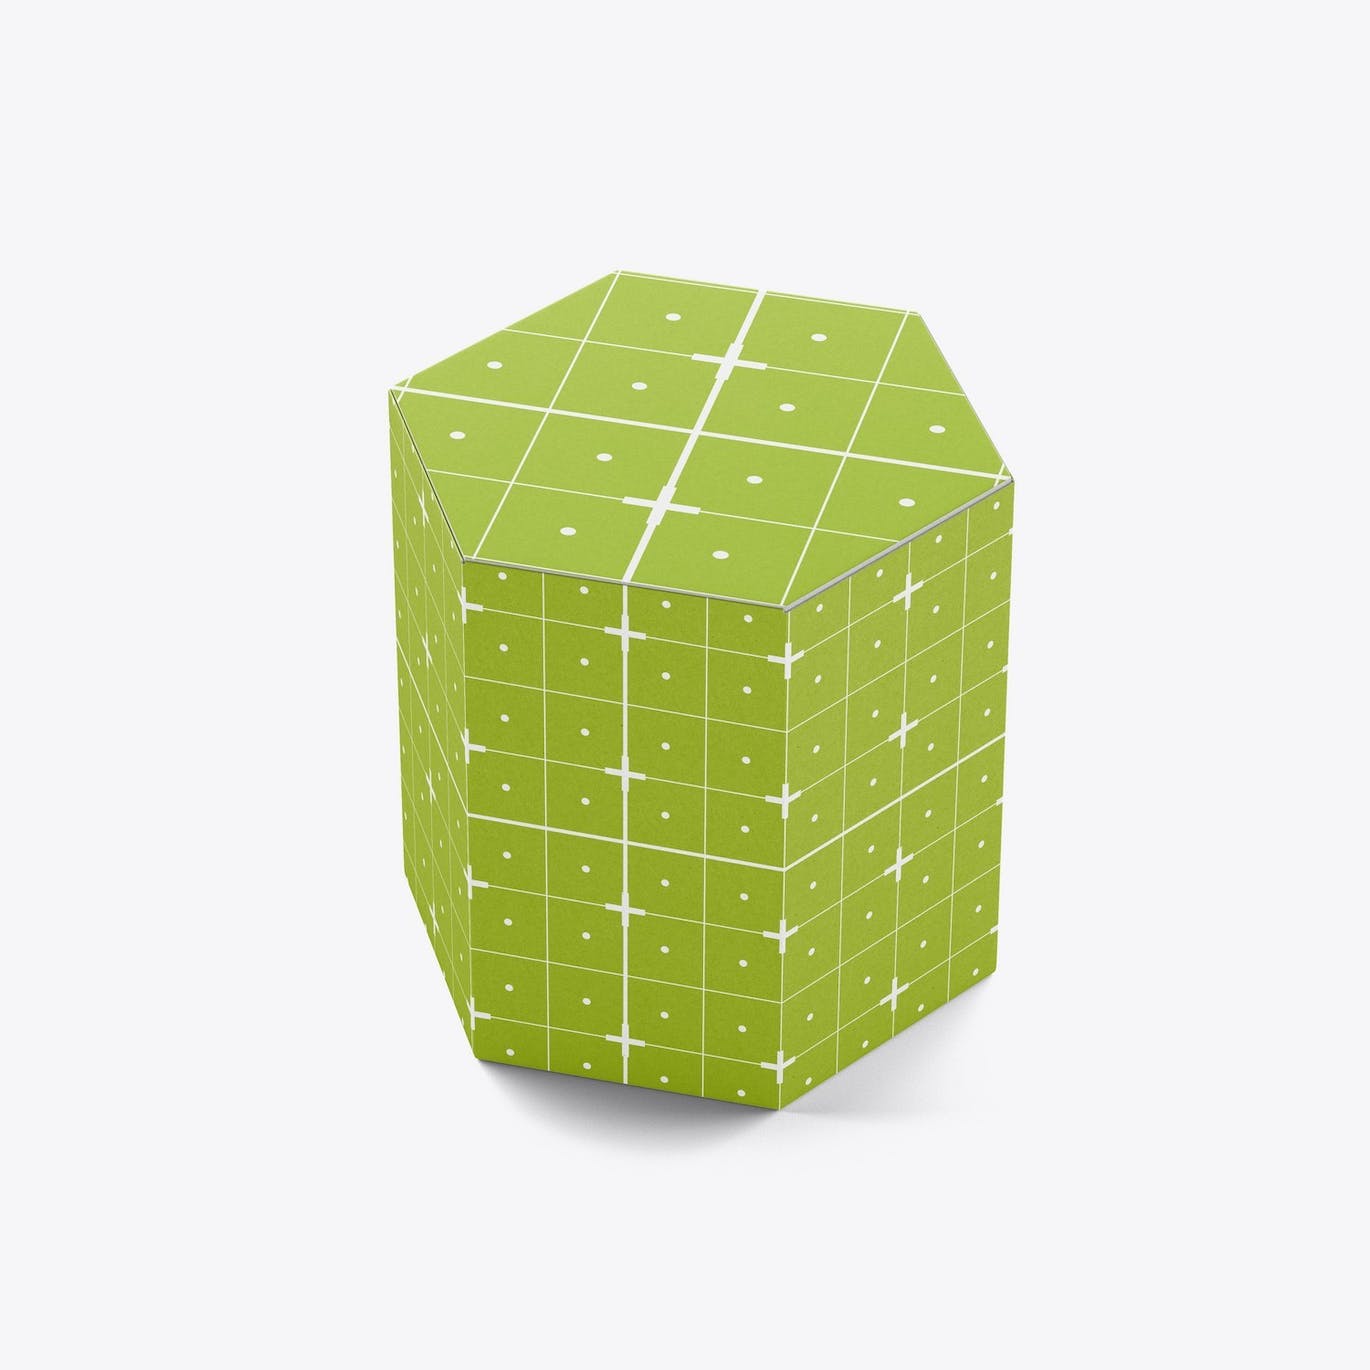 六边形长方体纸盒包装设计样机 Hexagonal Box Mockup 样机素材 第13张